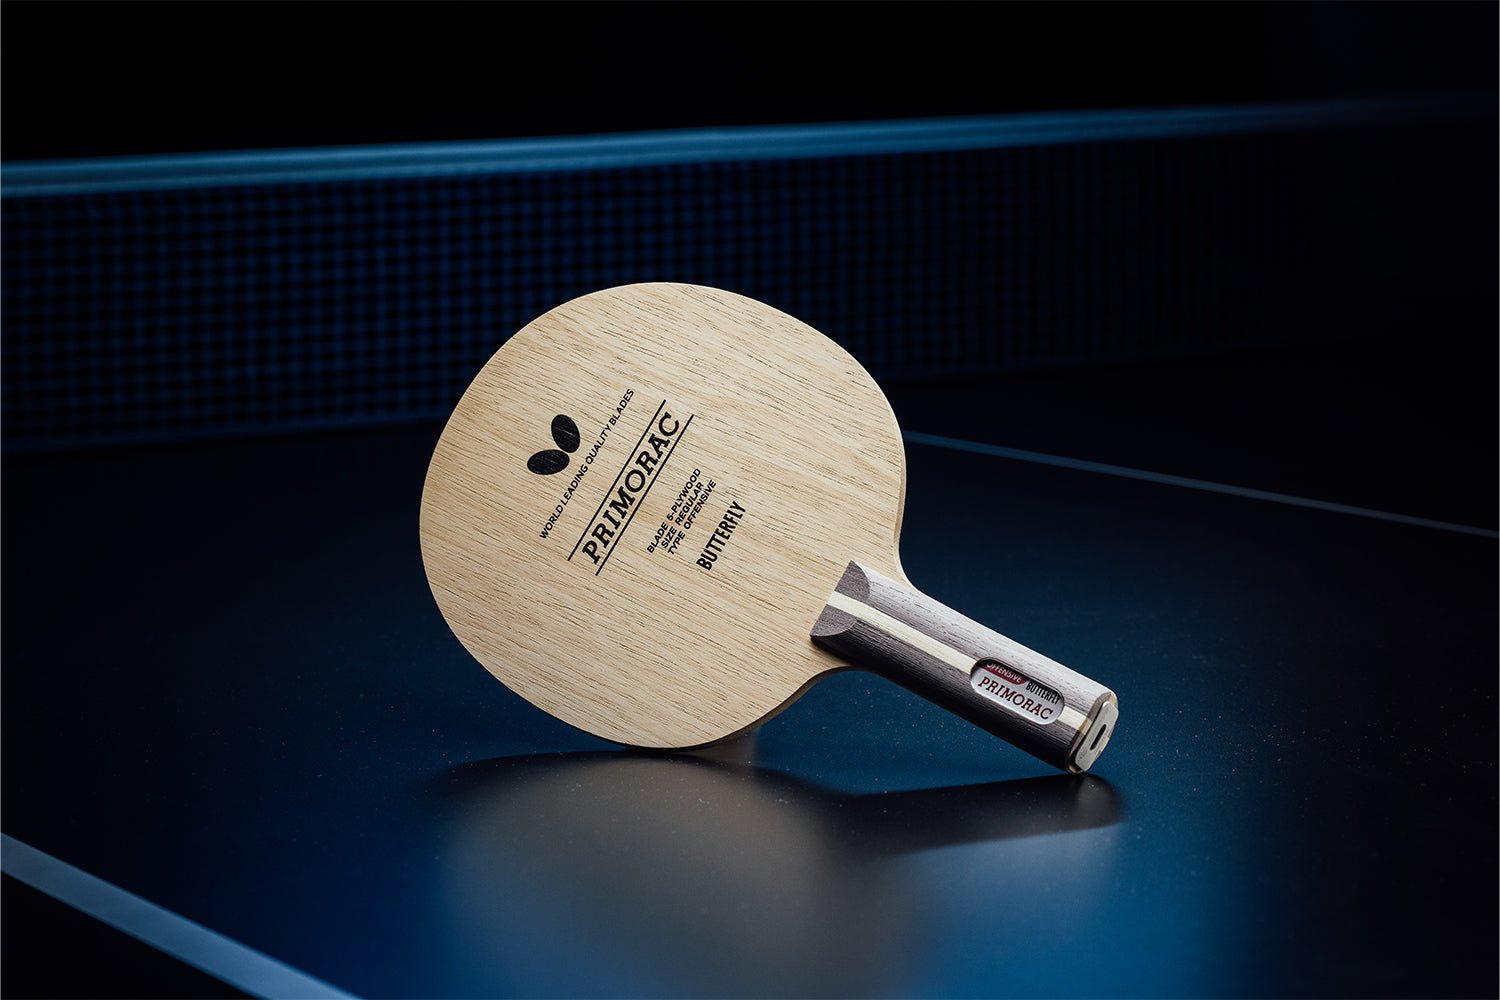 Stehender BUTTERFLY Primorac Tischtennisschläger mit geradem Griff, Janova Sensor, USB-C-Buchse auf Tischtennistisch